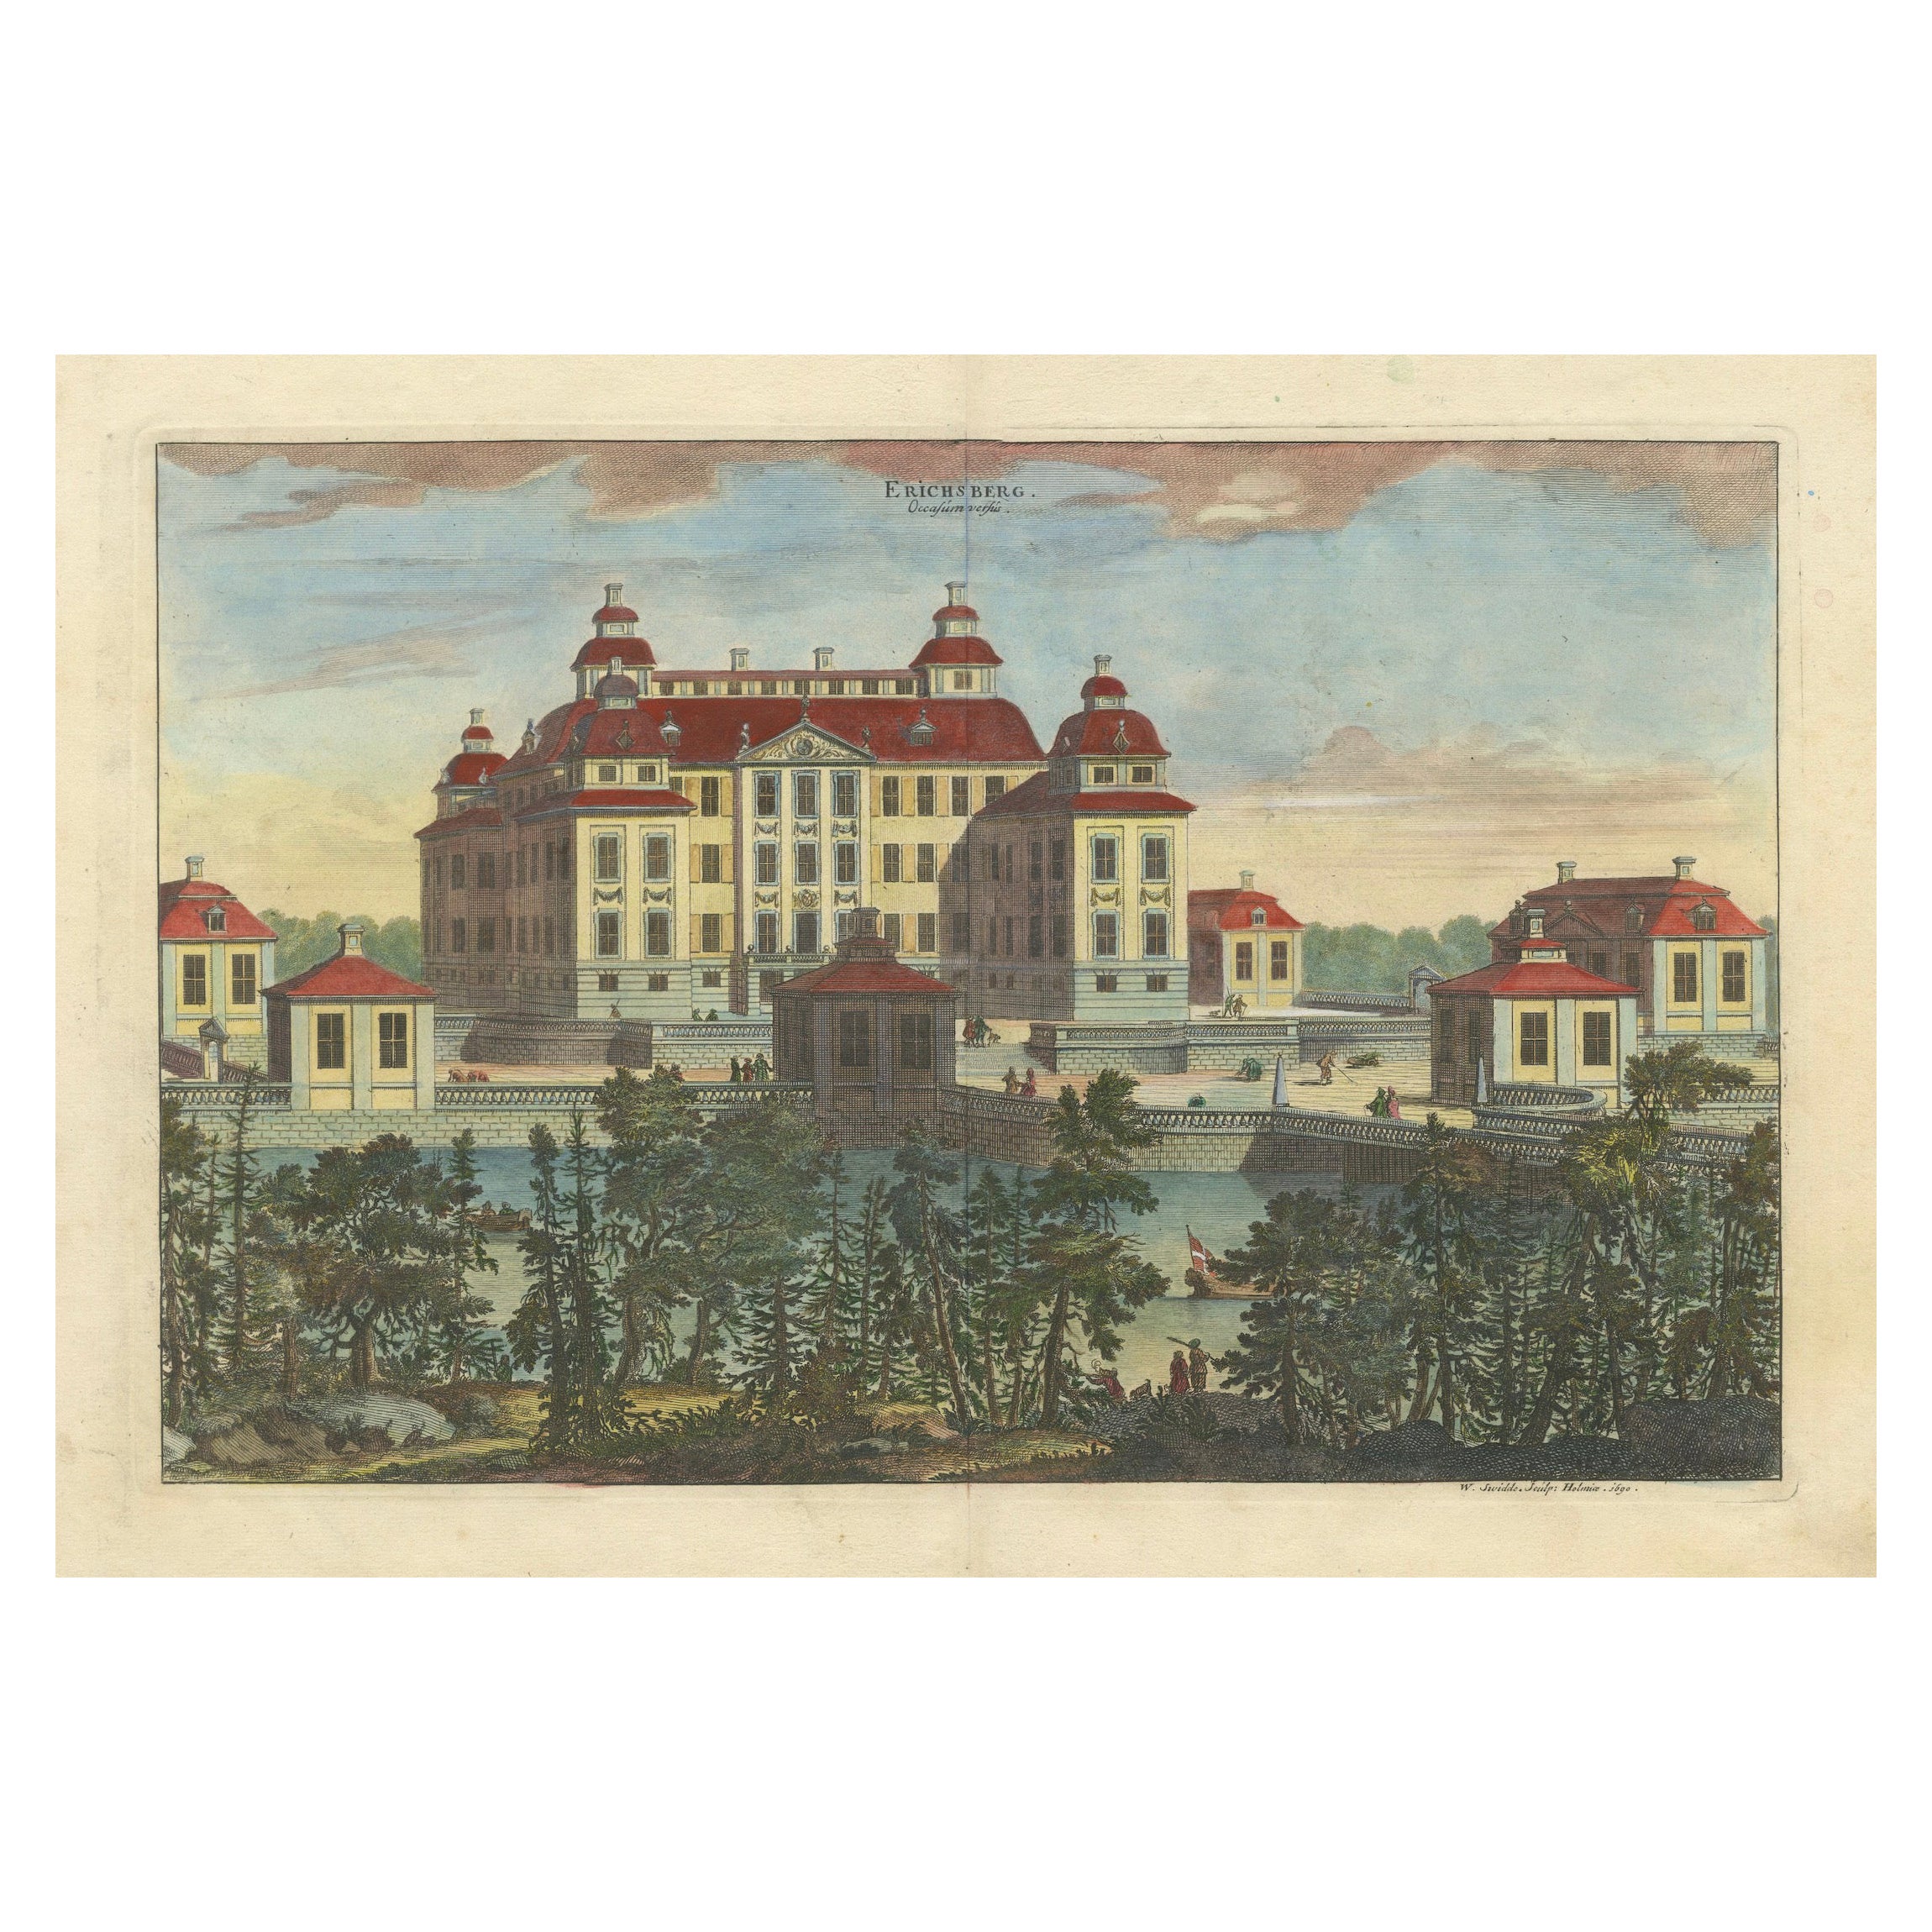 Baroque Splendor: Ericsberg Castle in Swidde's Suecia Antiqua et Hodierna, 1690 For Sale